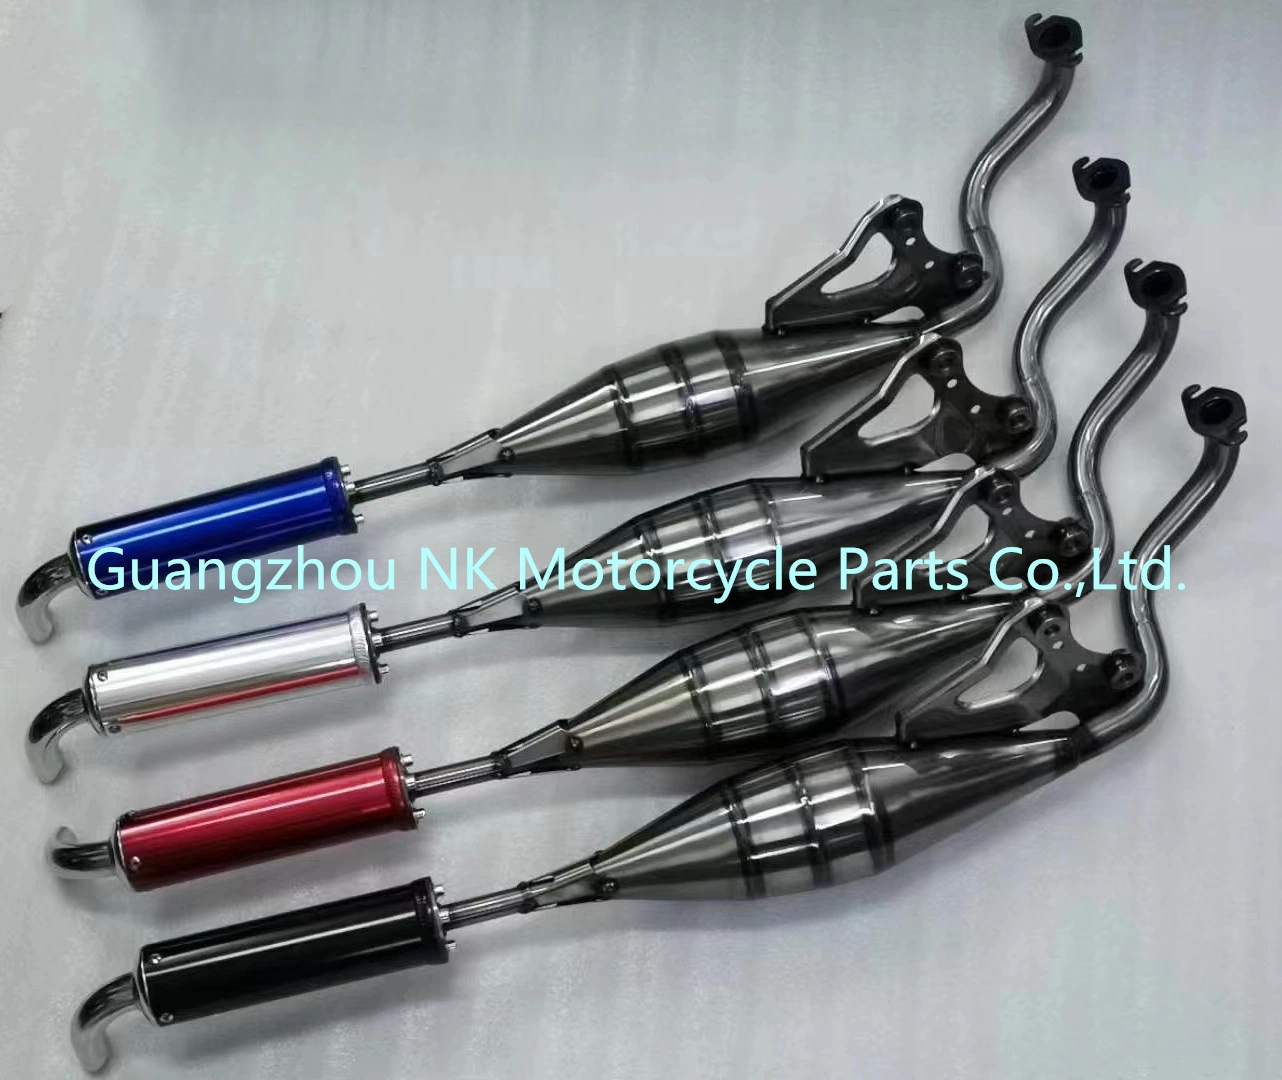 Nk YAMAHA Honda Bajaj Sym Racing CNC Motorcycle Parts Carbon Fiber Motorcycle Exhaust System N-Max/RS150/Piaggio/Vespa/Y15zr/LC150/EGO/Spark135